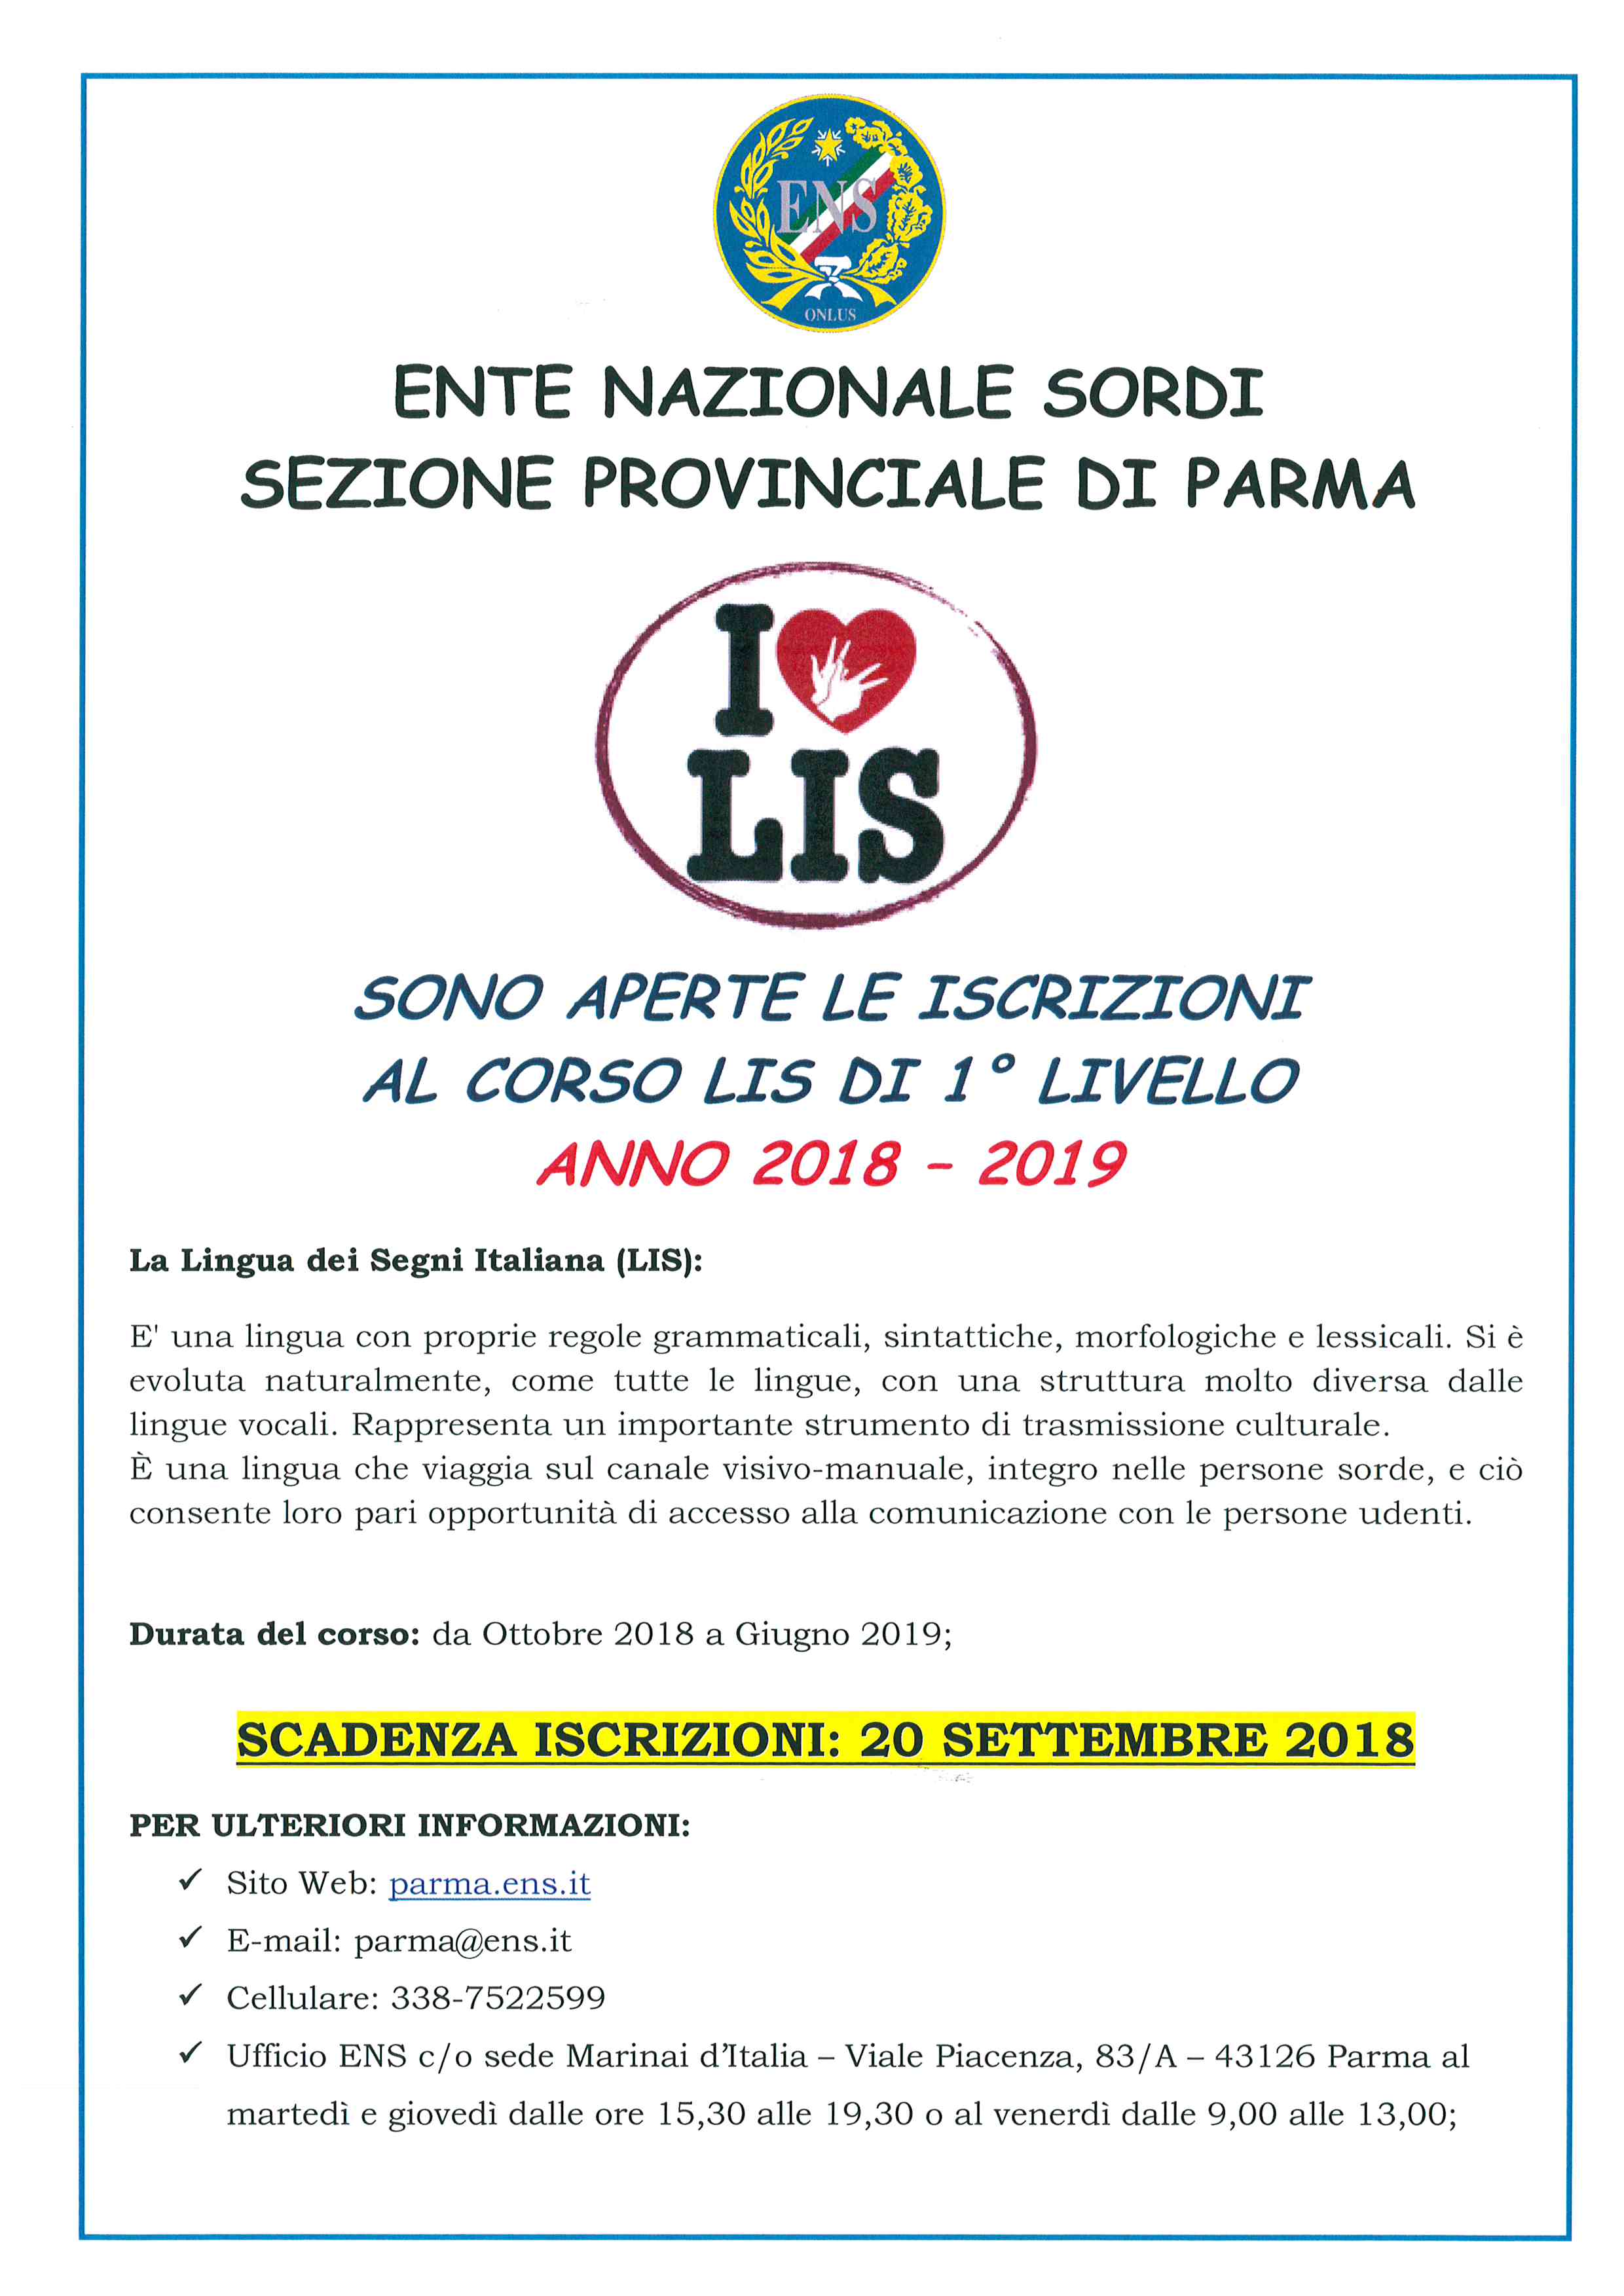 ENS_di_Parma_-_Locandina_-_2018-2019_1_Livello_AGGIORNATA.jpg